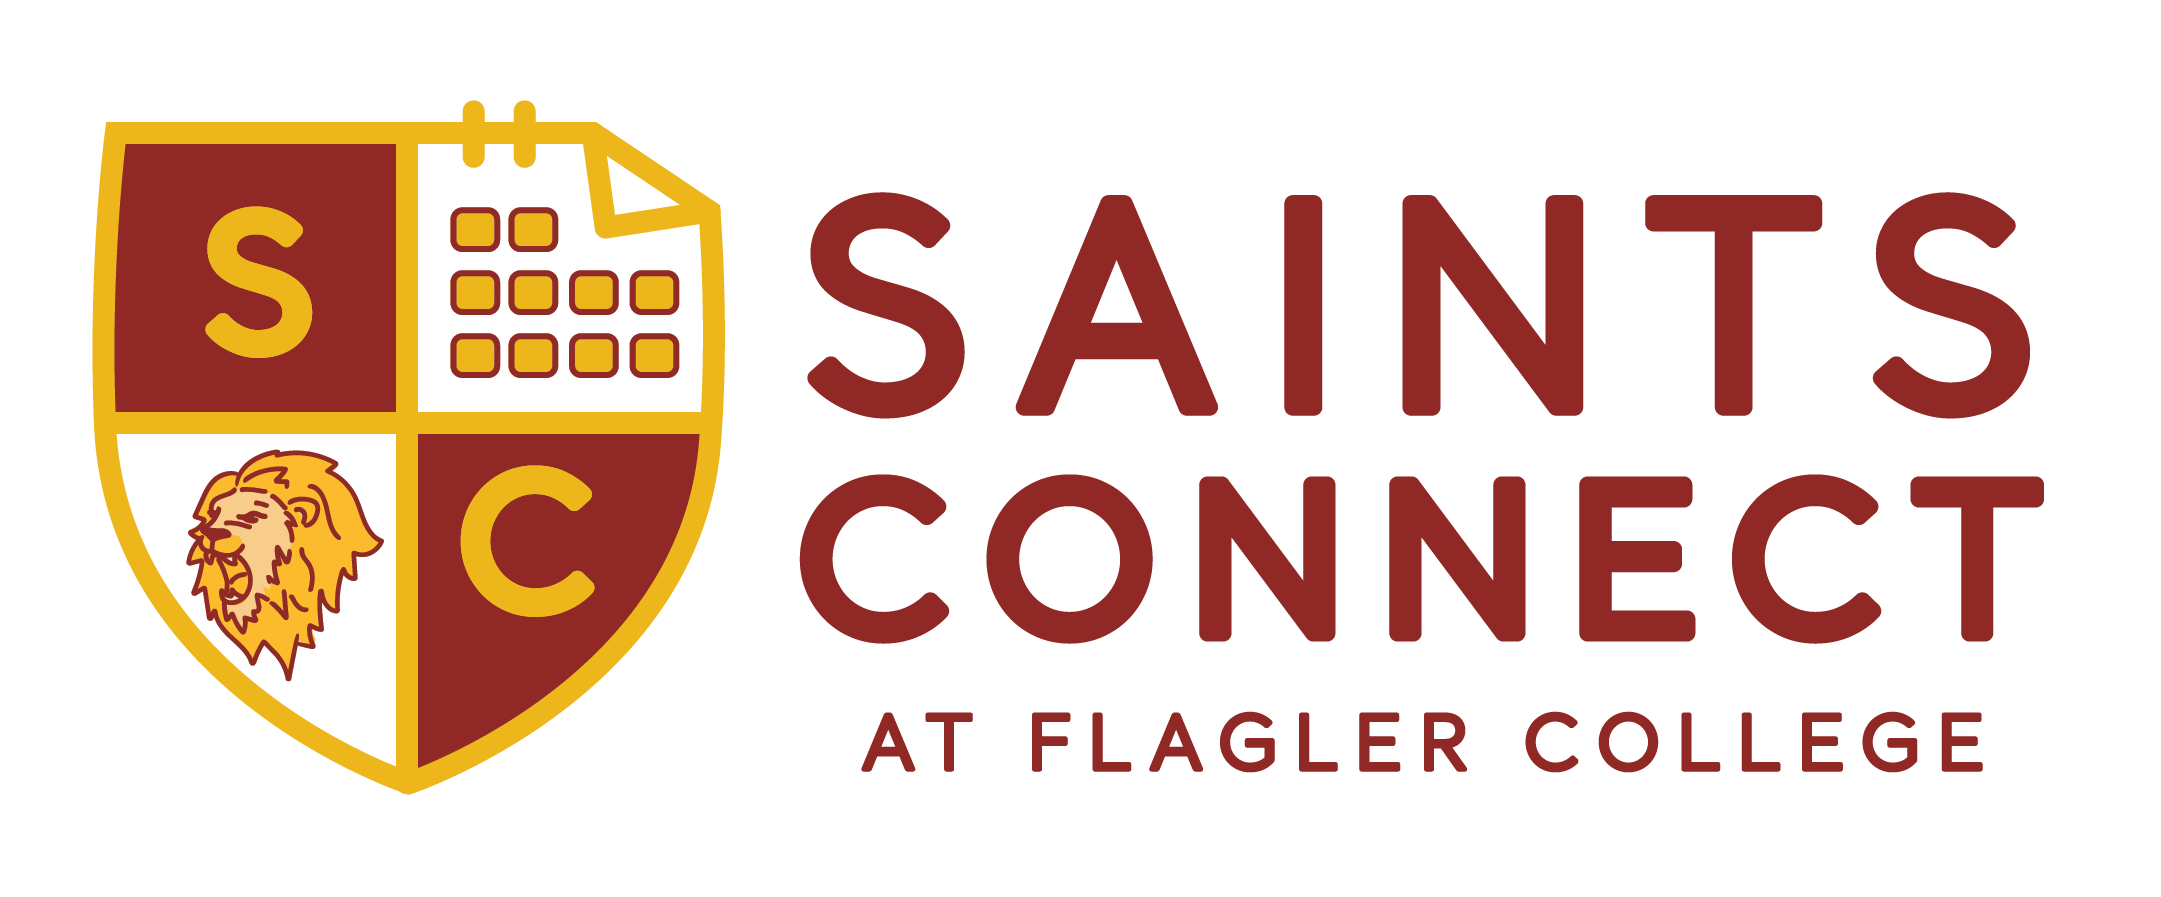 Flagler College Logo Image.